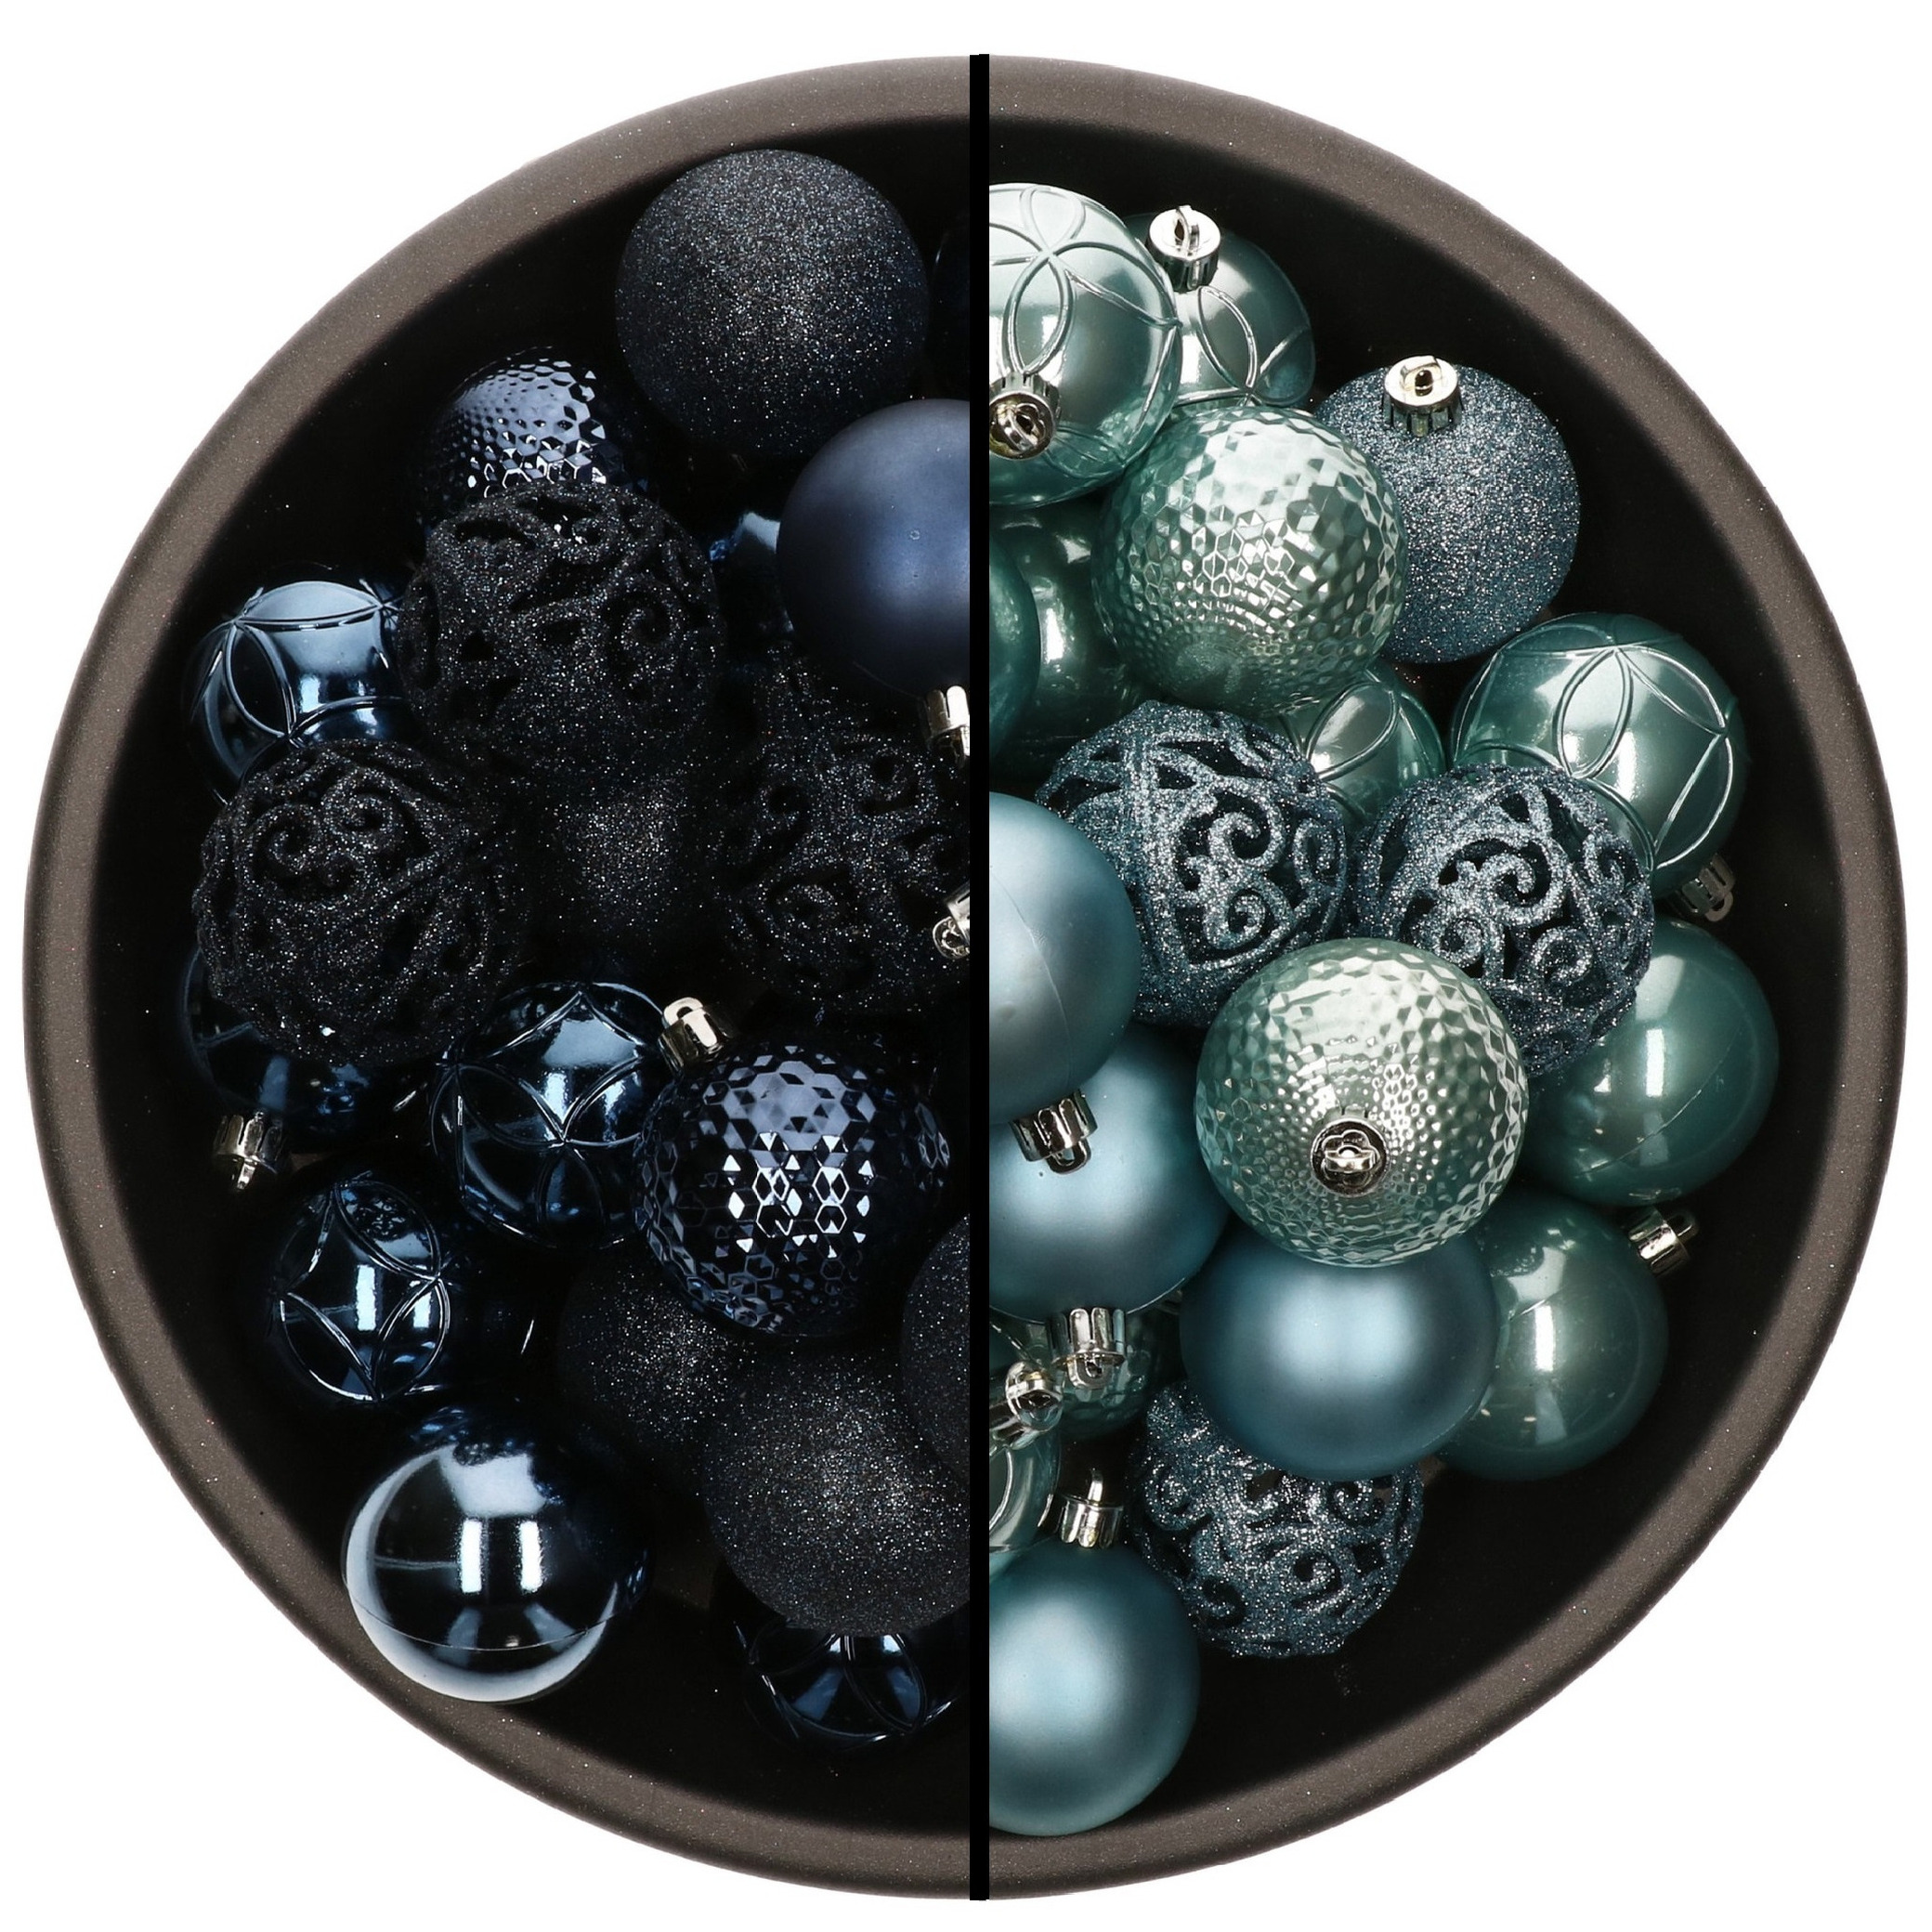 74x stuks kunststof kerstballen mix van donkerblauw en ijsblauw 6 cm